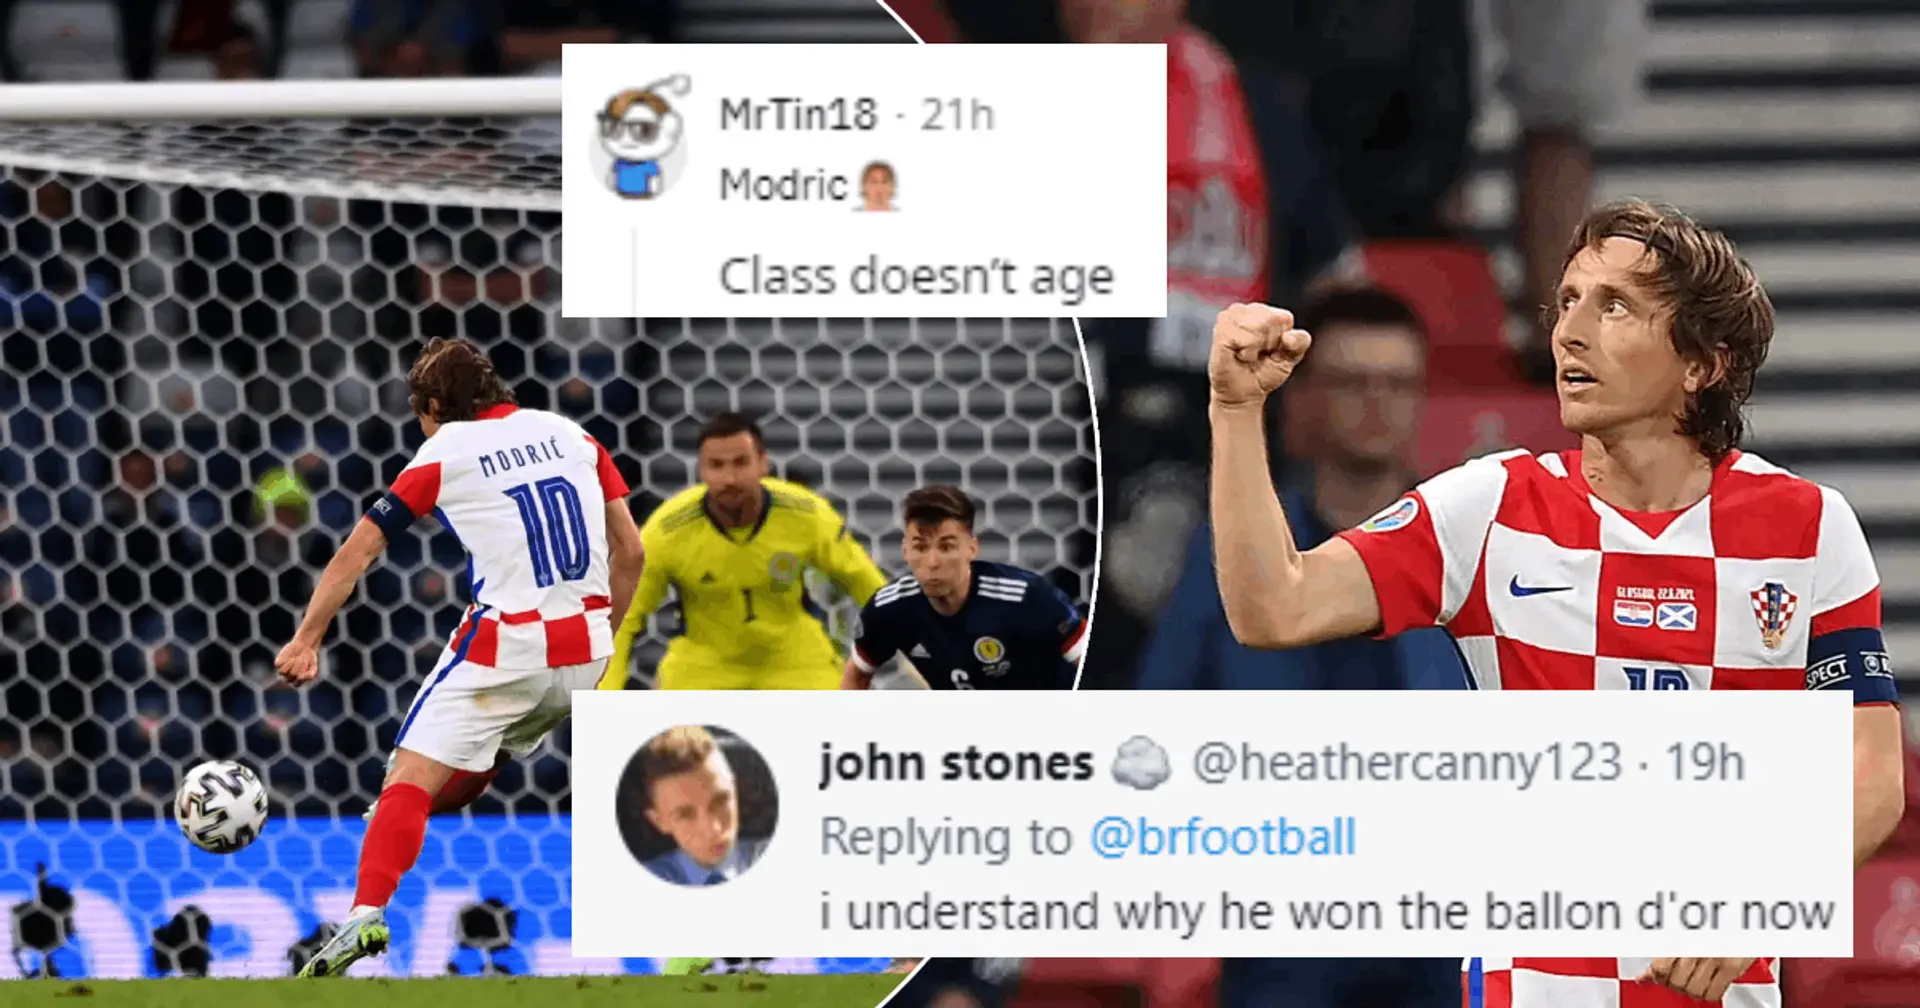 "Je comprends pourquoi il a remporté le Ballon d'Or": les fans épatés par Luka Modric après son dernier match à l'Euro 2020